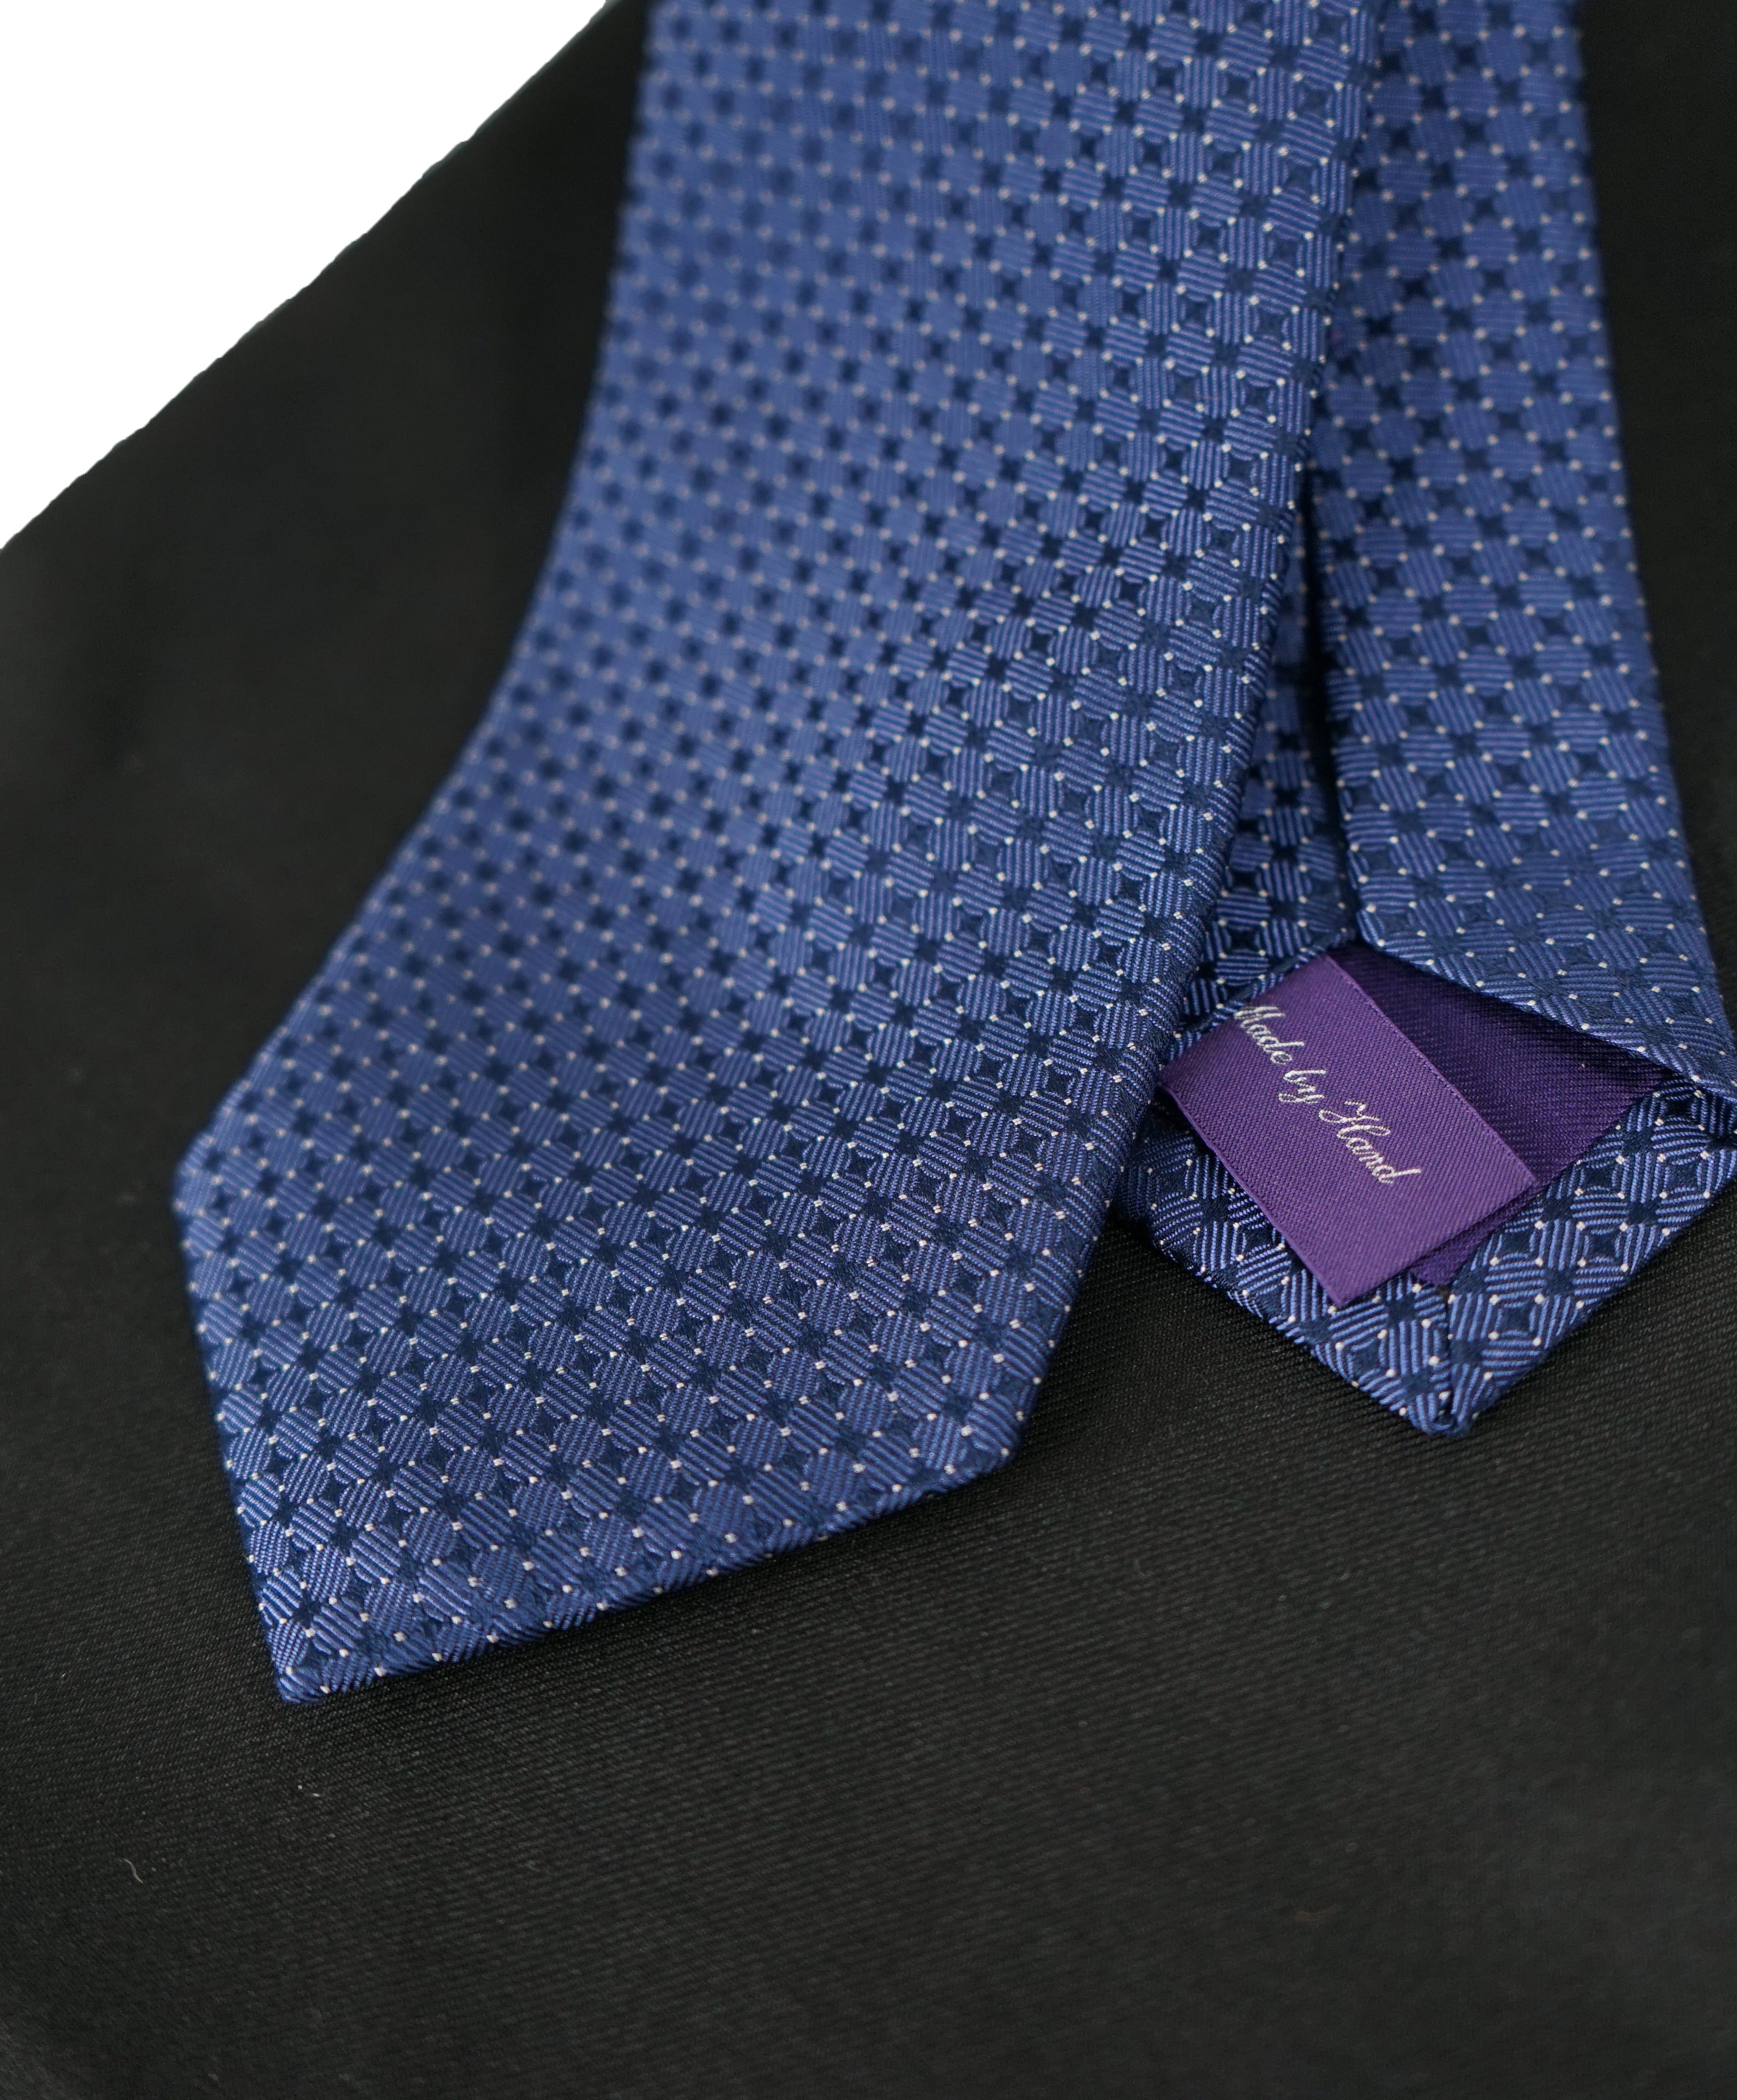 ralph lauren purple label tie